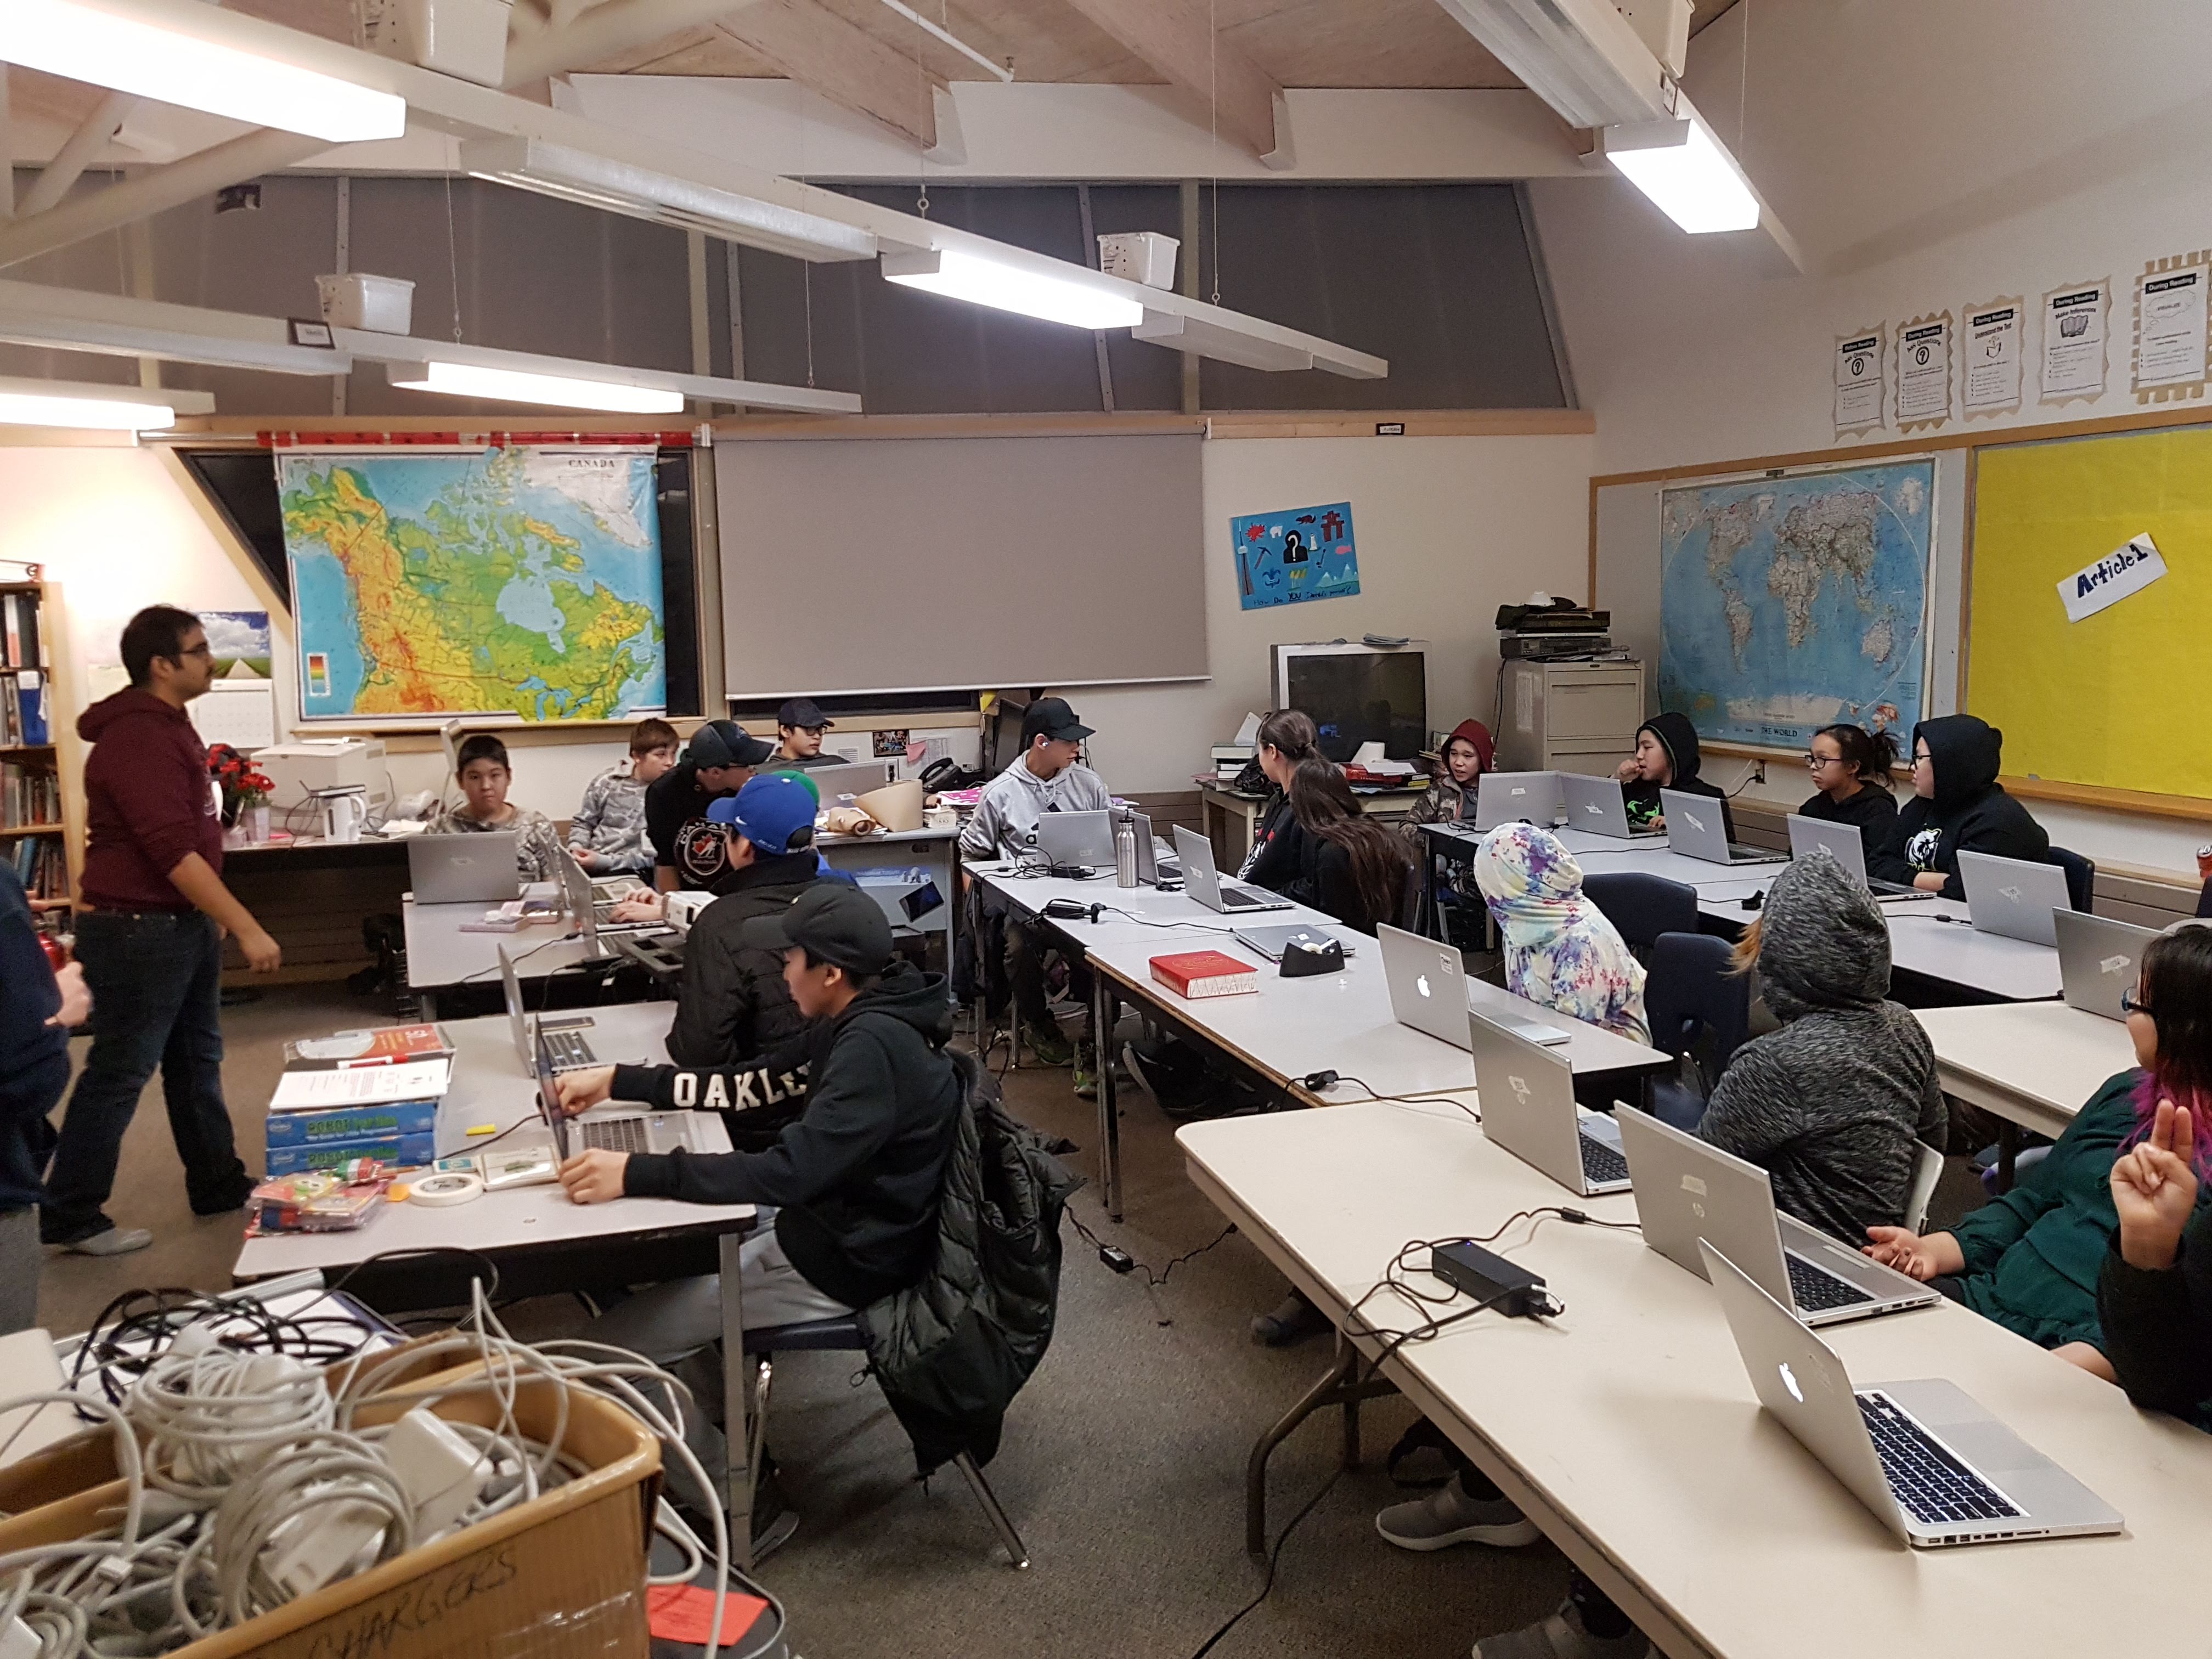 Students on laptops in classroom Nunavut